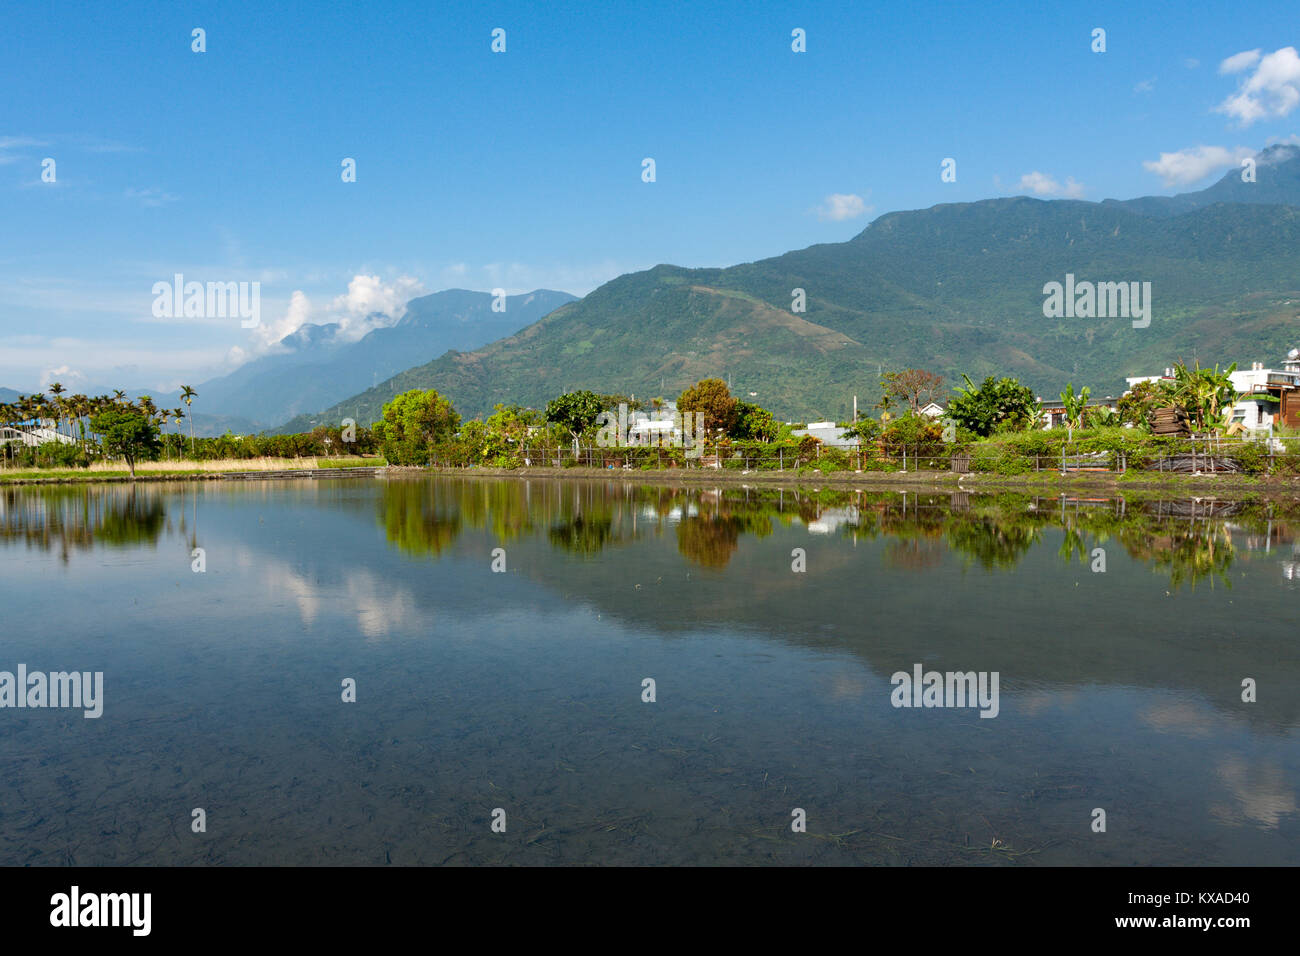 Scène de campagne, montagnes avec champ de riz et de réflexion sur l'eau dans les rizières, Ji'an Township, comté de Hualien, Taiwan Banque D'Images